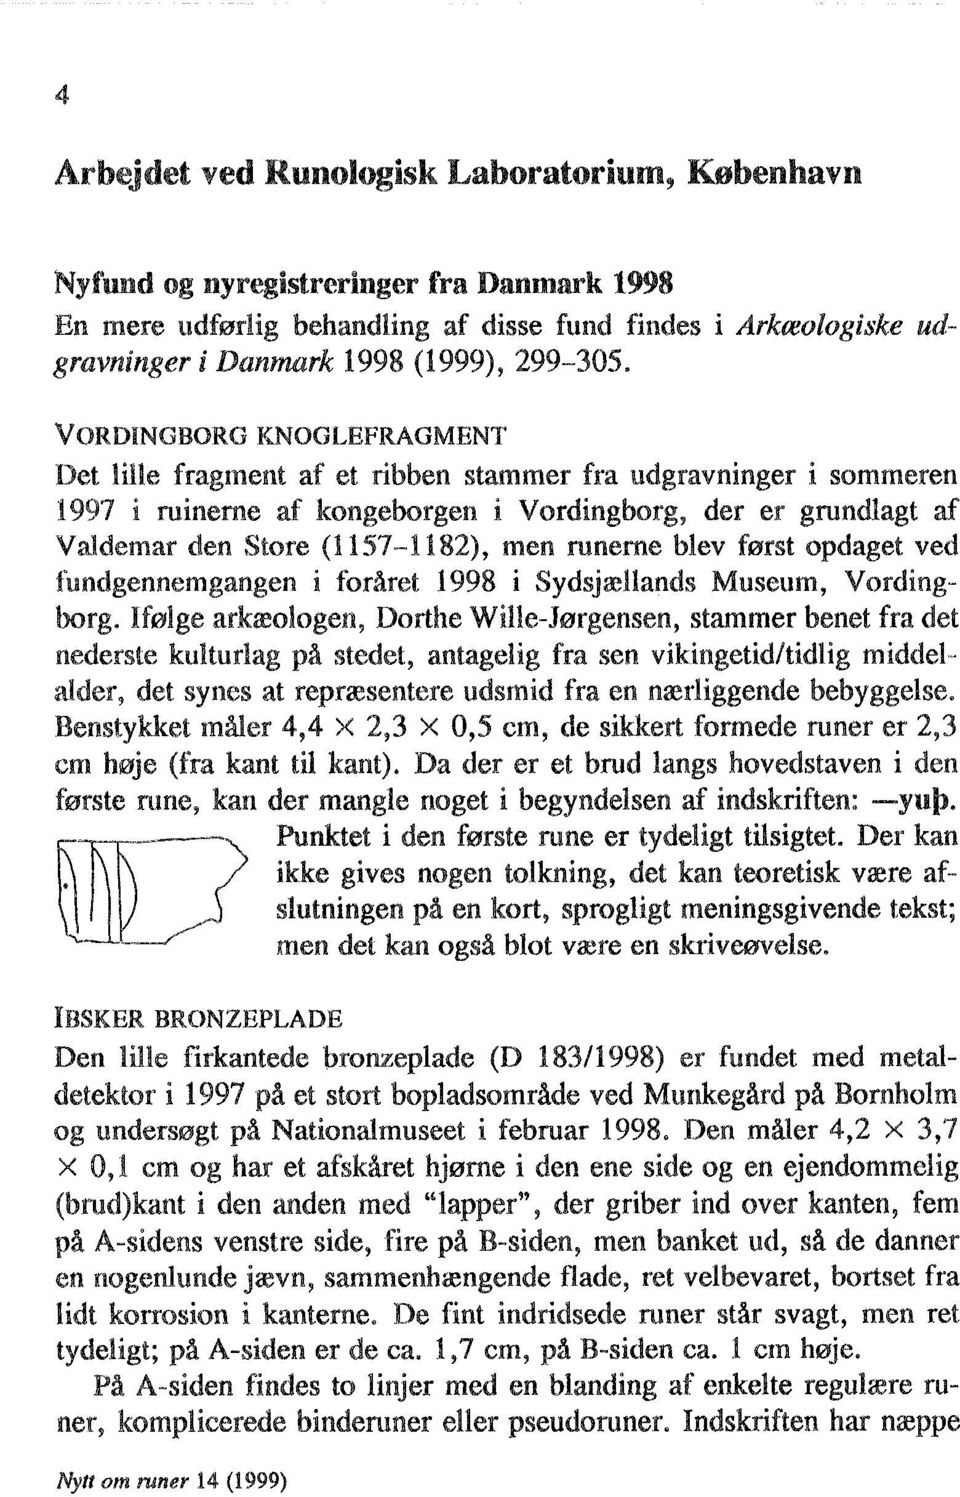 VORDINGBORG KNOGLEFRAGMENT Det lille fragment af et ribben stammer fra udgravninger i sommeren 1997 i ruineme af kongeborgen i Vordingborg, der er grundlagt af Valdemar den Store (1157-1182), men